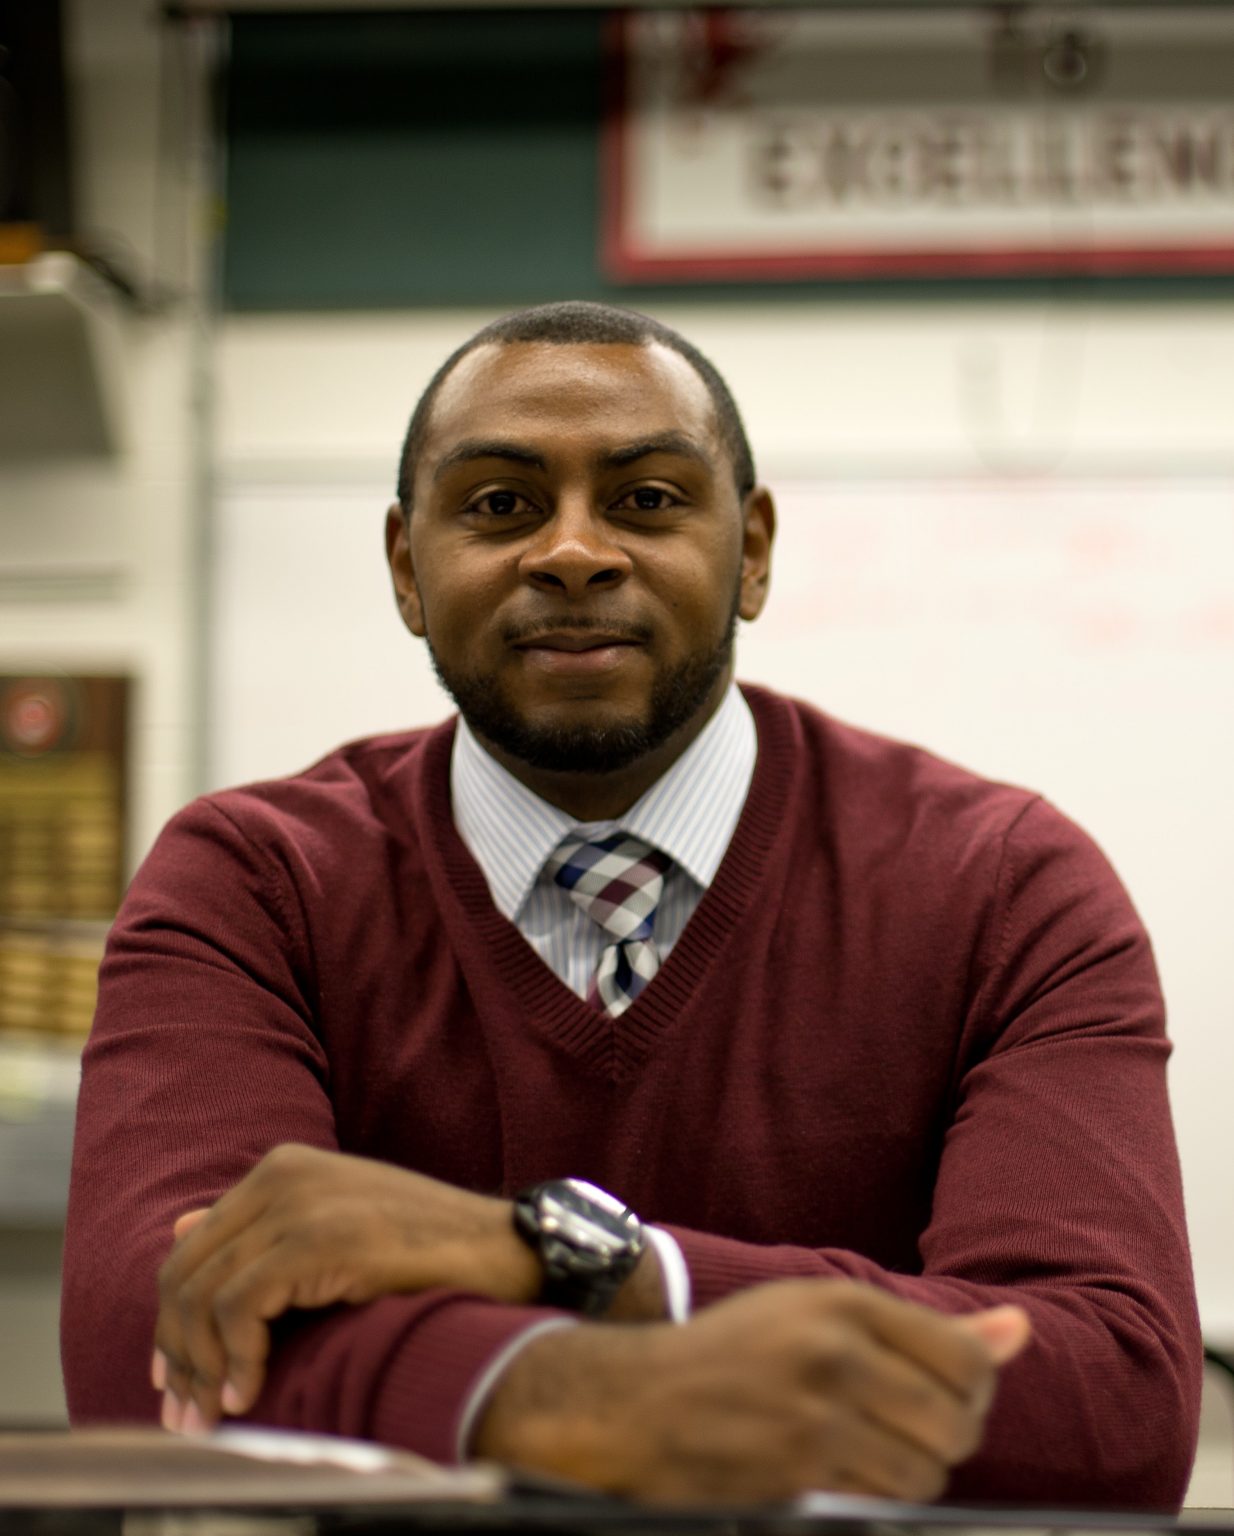 Justin Johnson named Illinois' 2021 Teacher of the Year Chalkboard